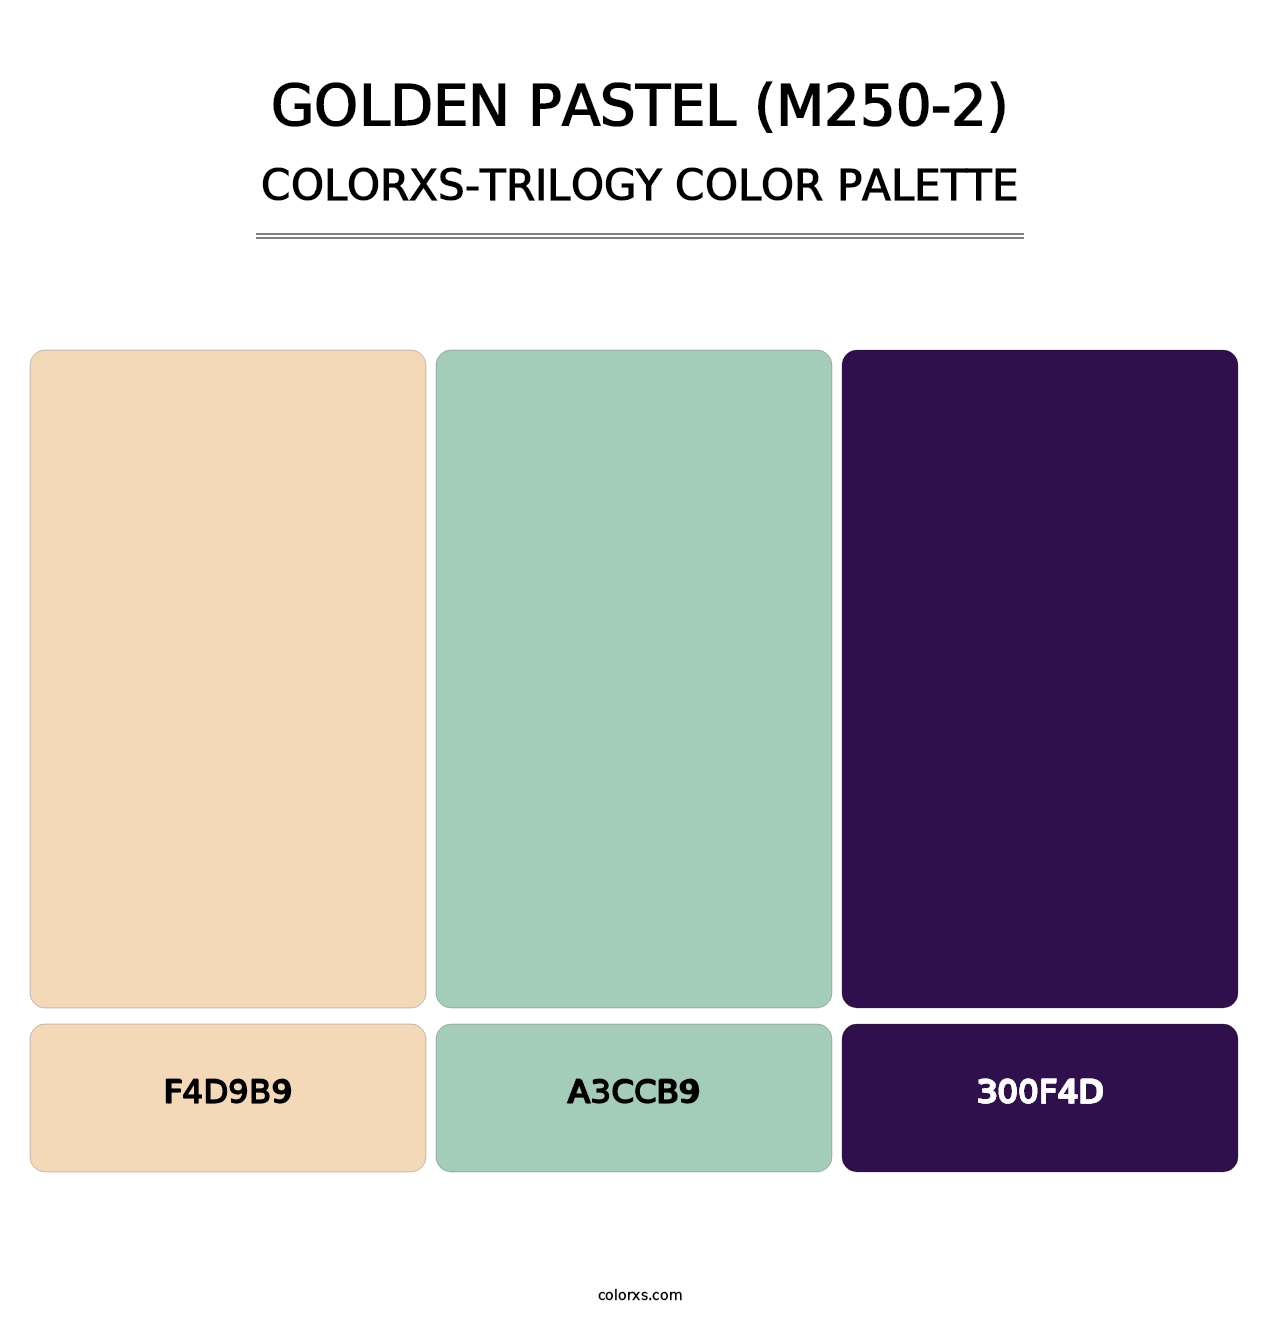 Golden Pastel (M250-2) - Colorxs Trilogy Palette